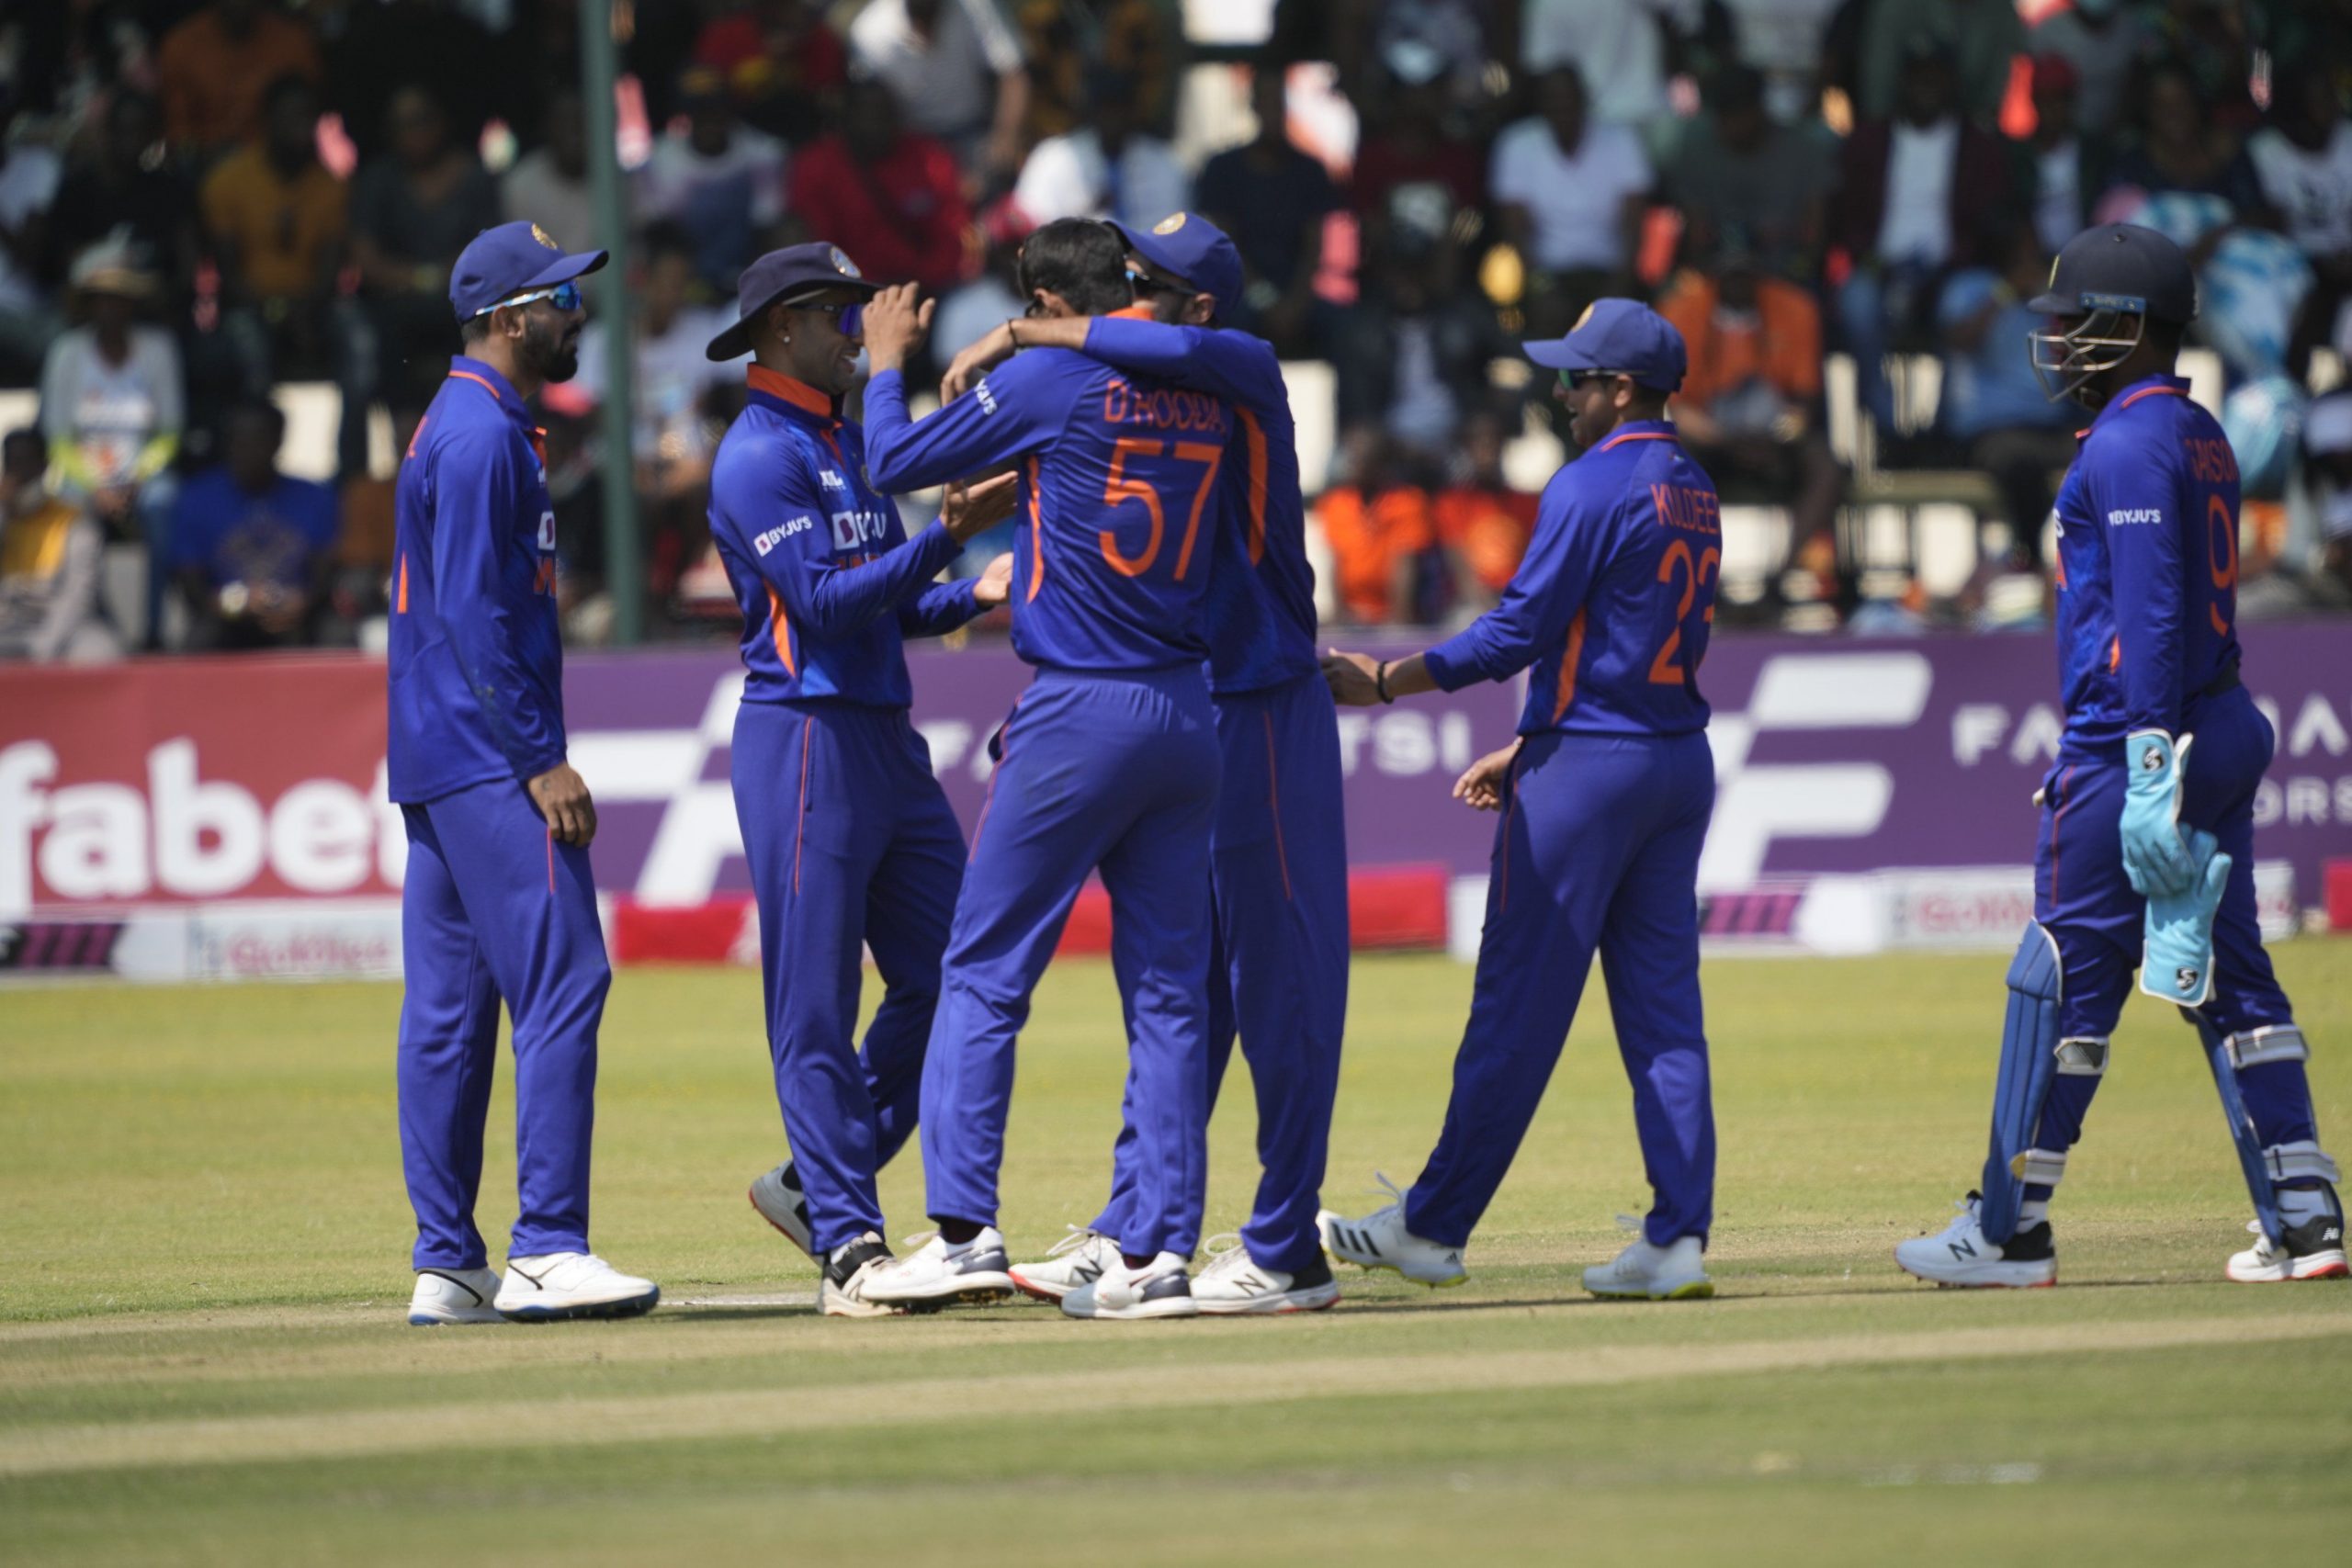 IND vs ZIM: जिम्बाब्वे के खिलाफ भारत की एक जीत, टूट जाएगा पाकिस्तान का रिकॉर्ड